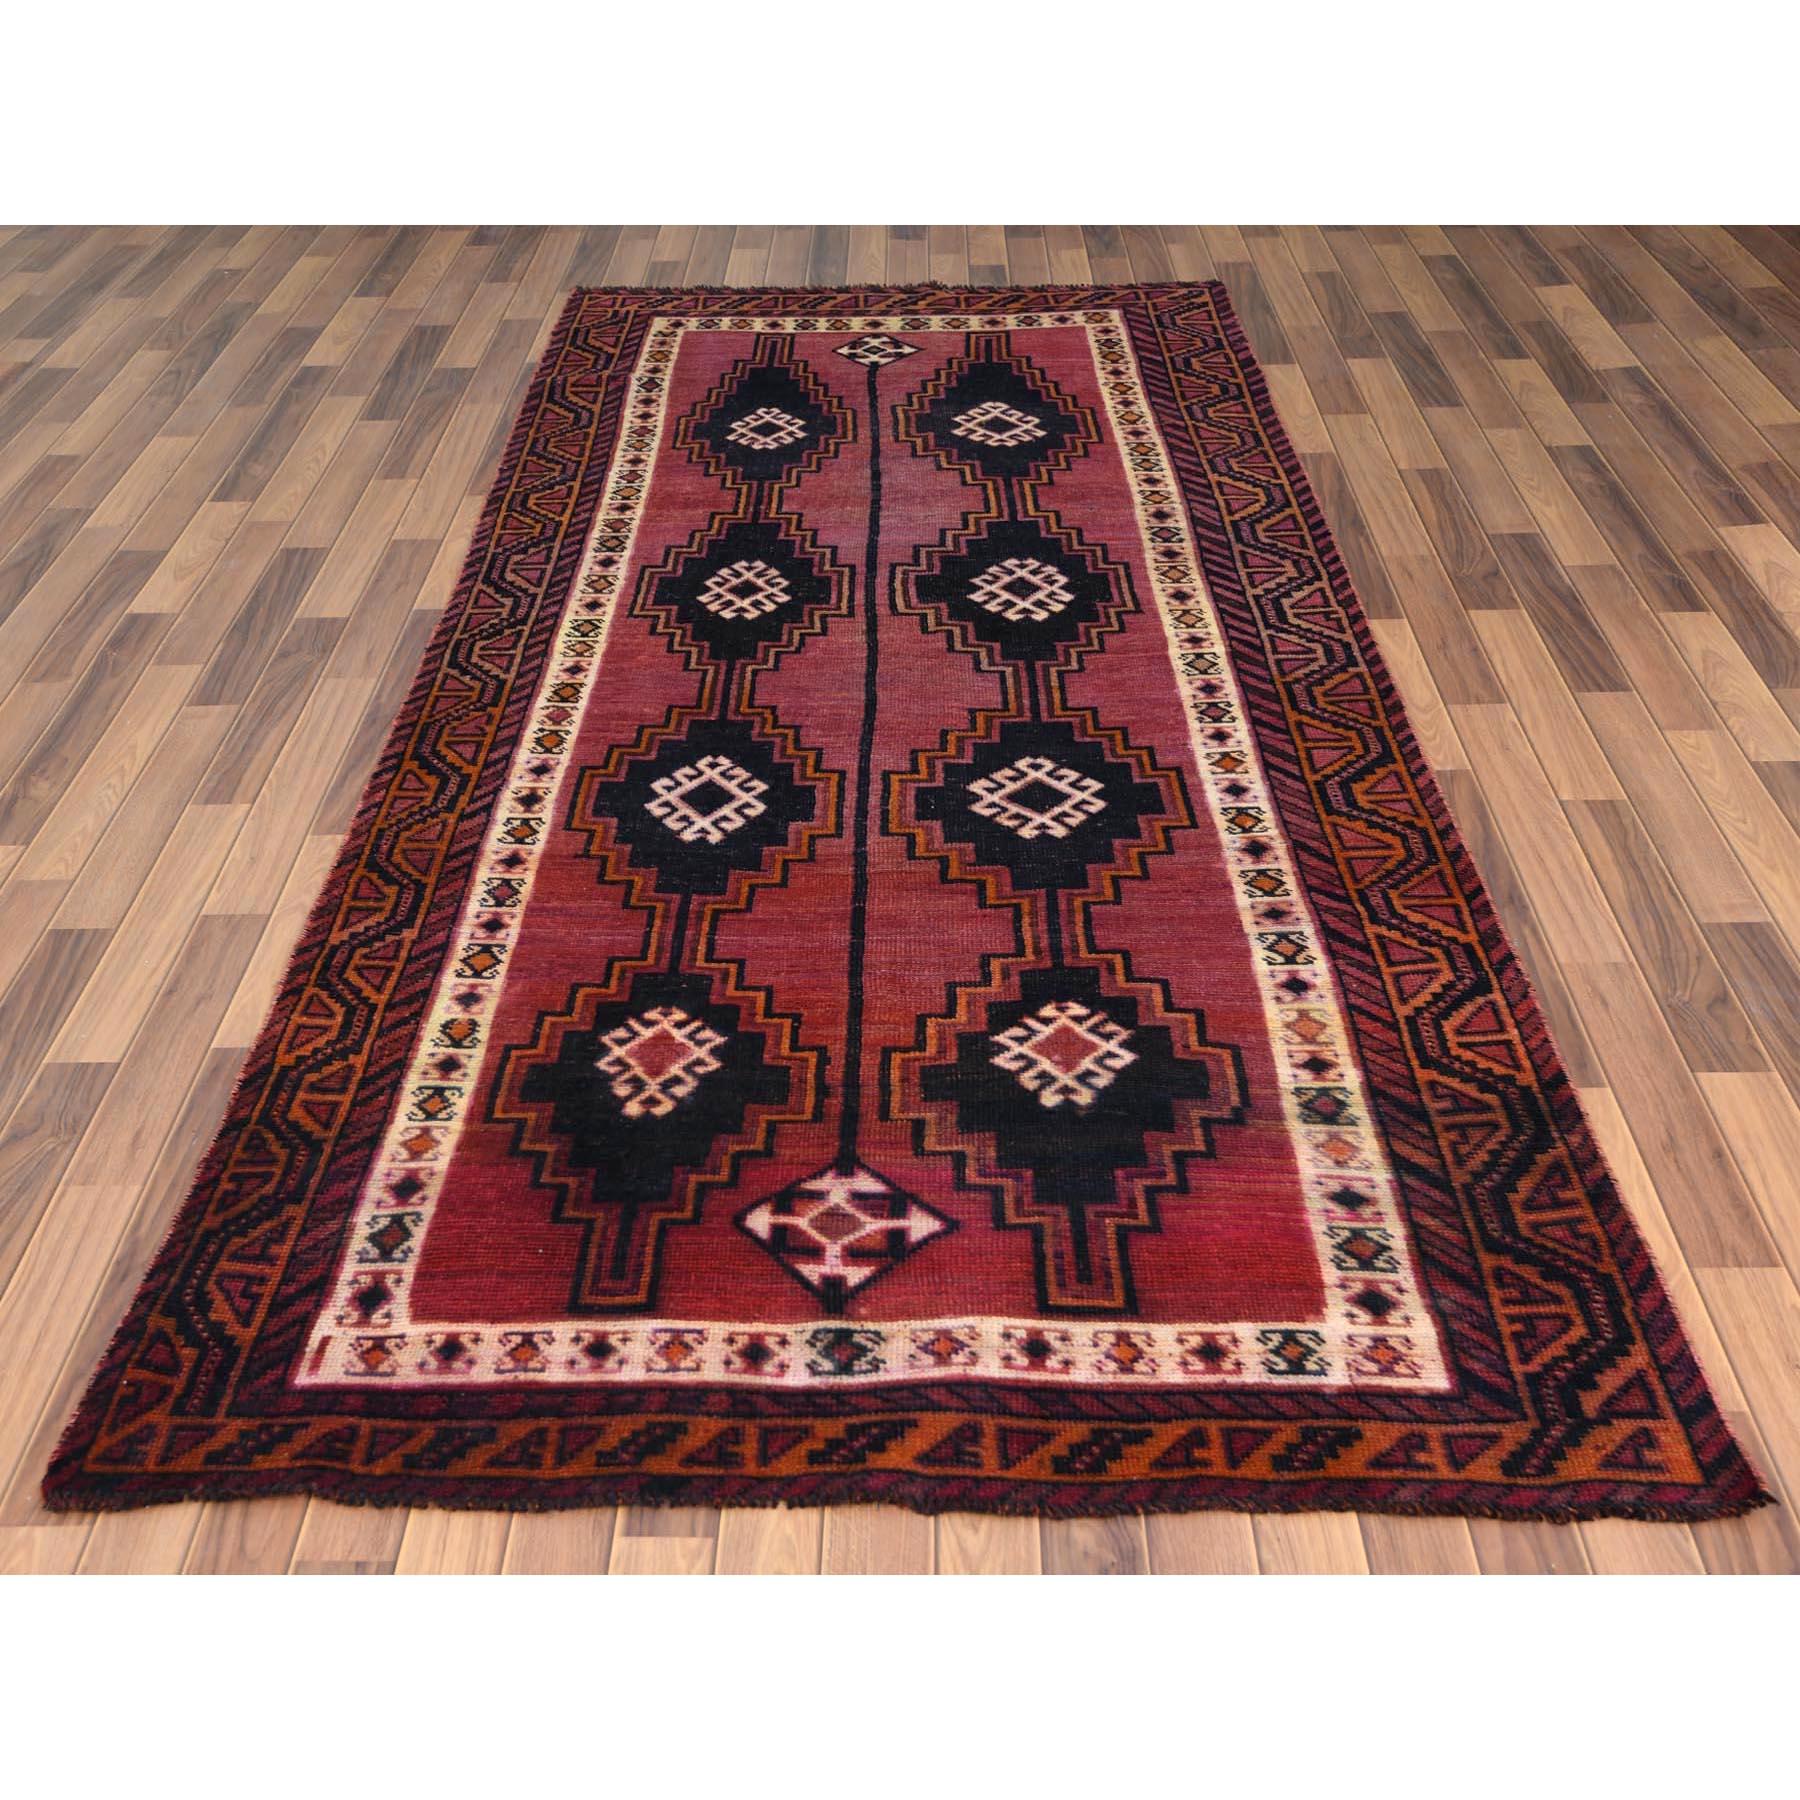 Dieser fabelhafte, handgeknüpfte Teppich wurde für zusätzliche Festigkeit und Haltbarkeit entwickelt und gestaltet. Dieser Teppich wurde in wochenlanger Handarbeit nach der traditionellen Methode der Teppichherstellung gefertigt. Dies ist wirklich